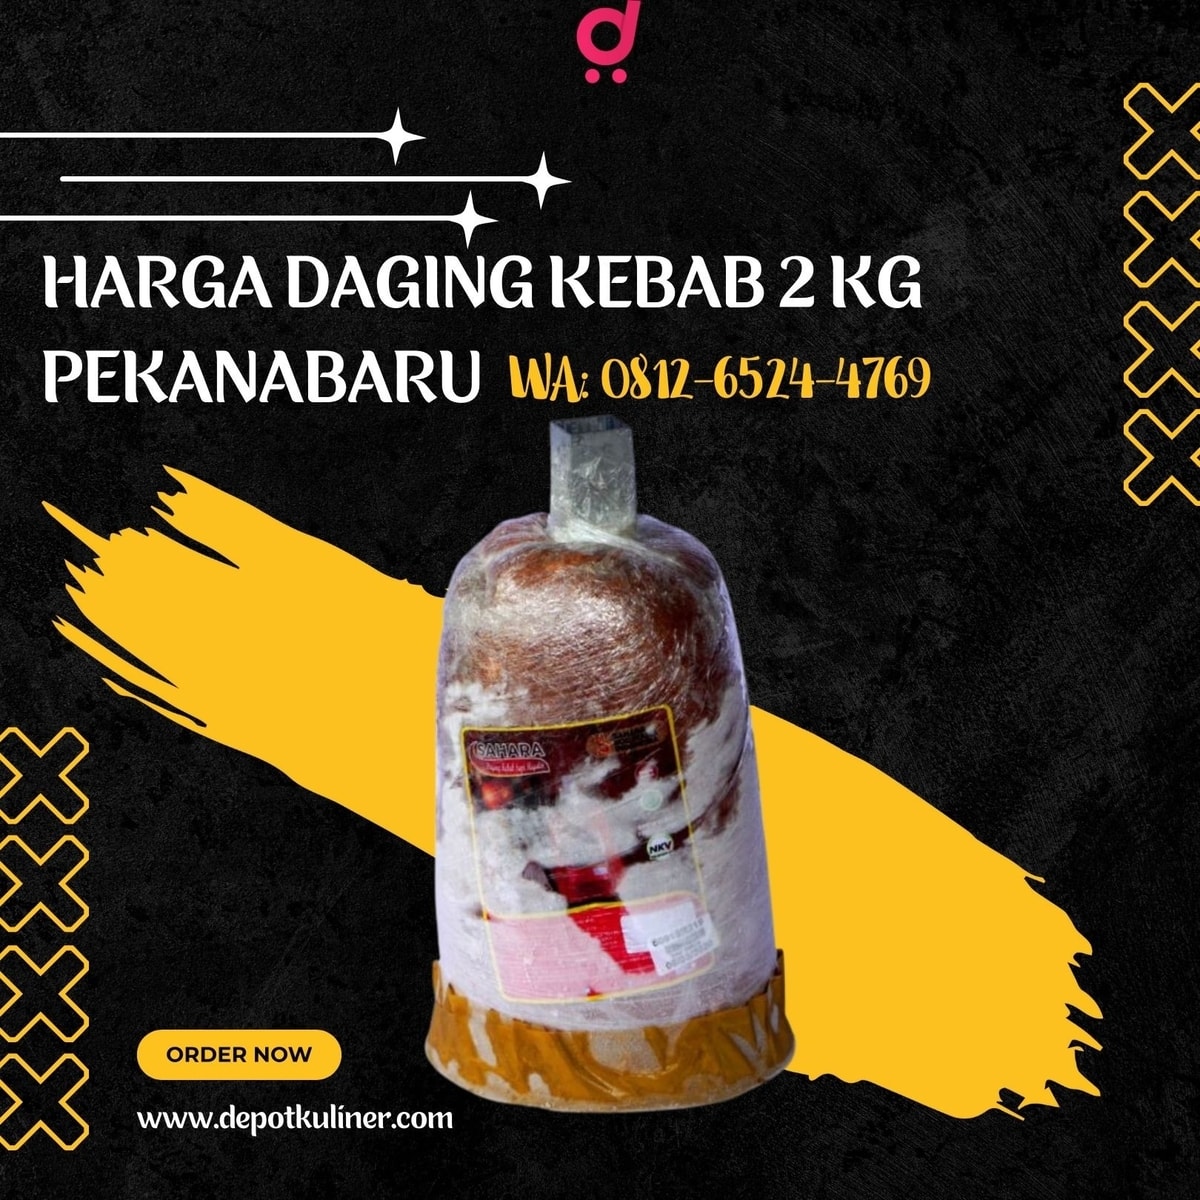 MURAH BERKUALITAS, Call 0812-6524-4769, Harga Daging Kebab 2 Kg Pekanabaru